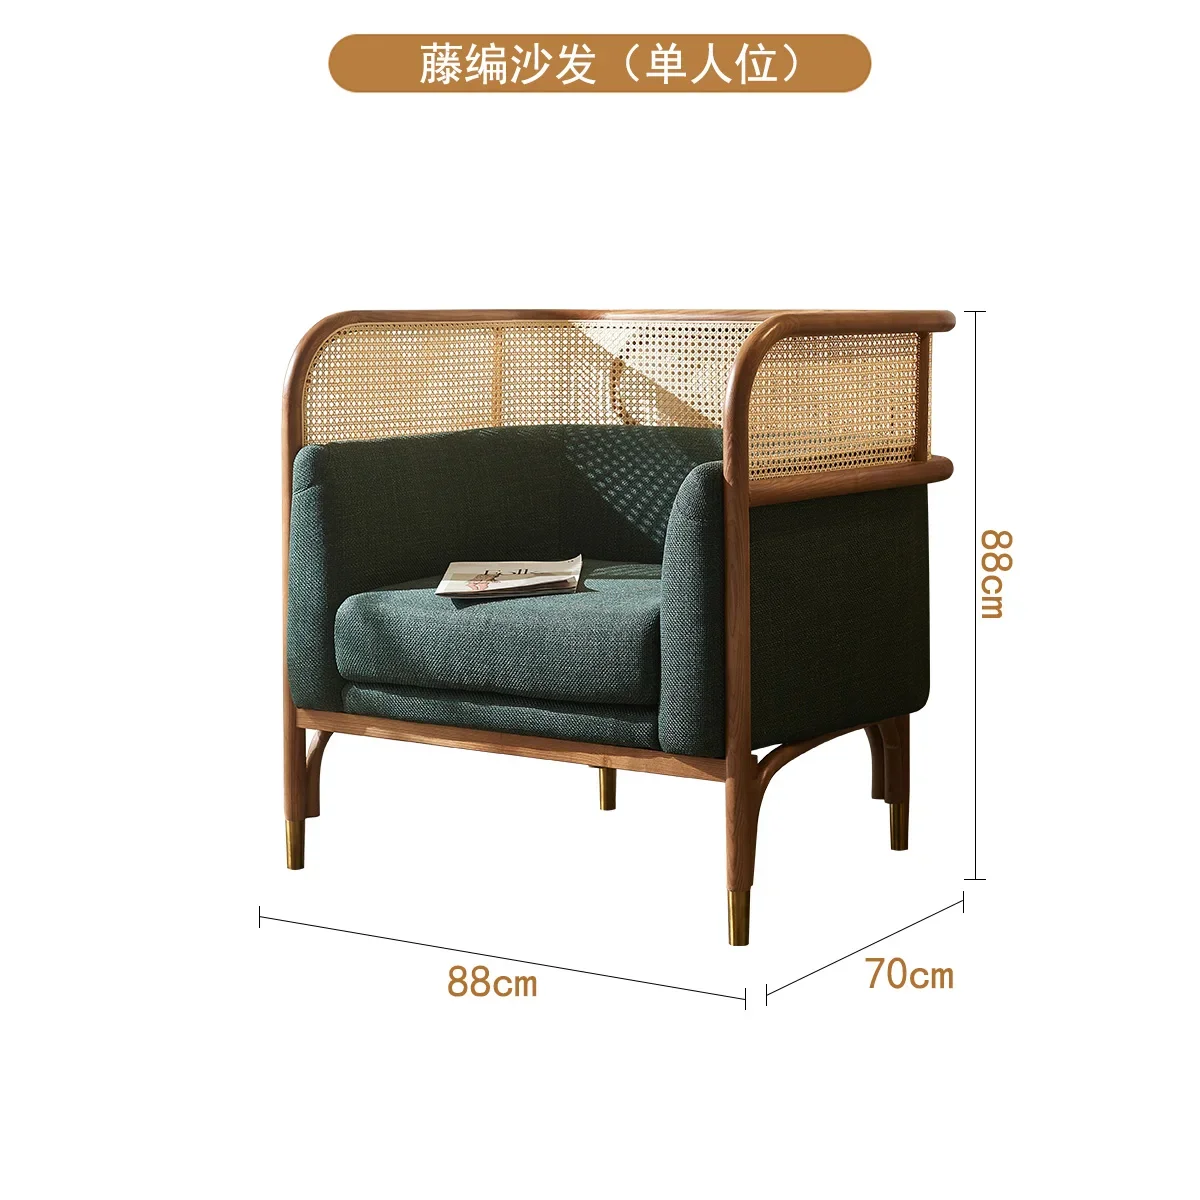 

Диван из ротанга из массива дерева, кофейный столик для трех человек, для маленькой квартиры, гостиной, двухместный диван-стул для отдыха